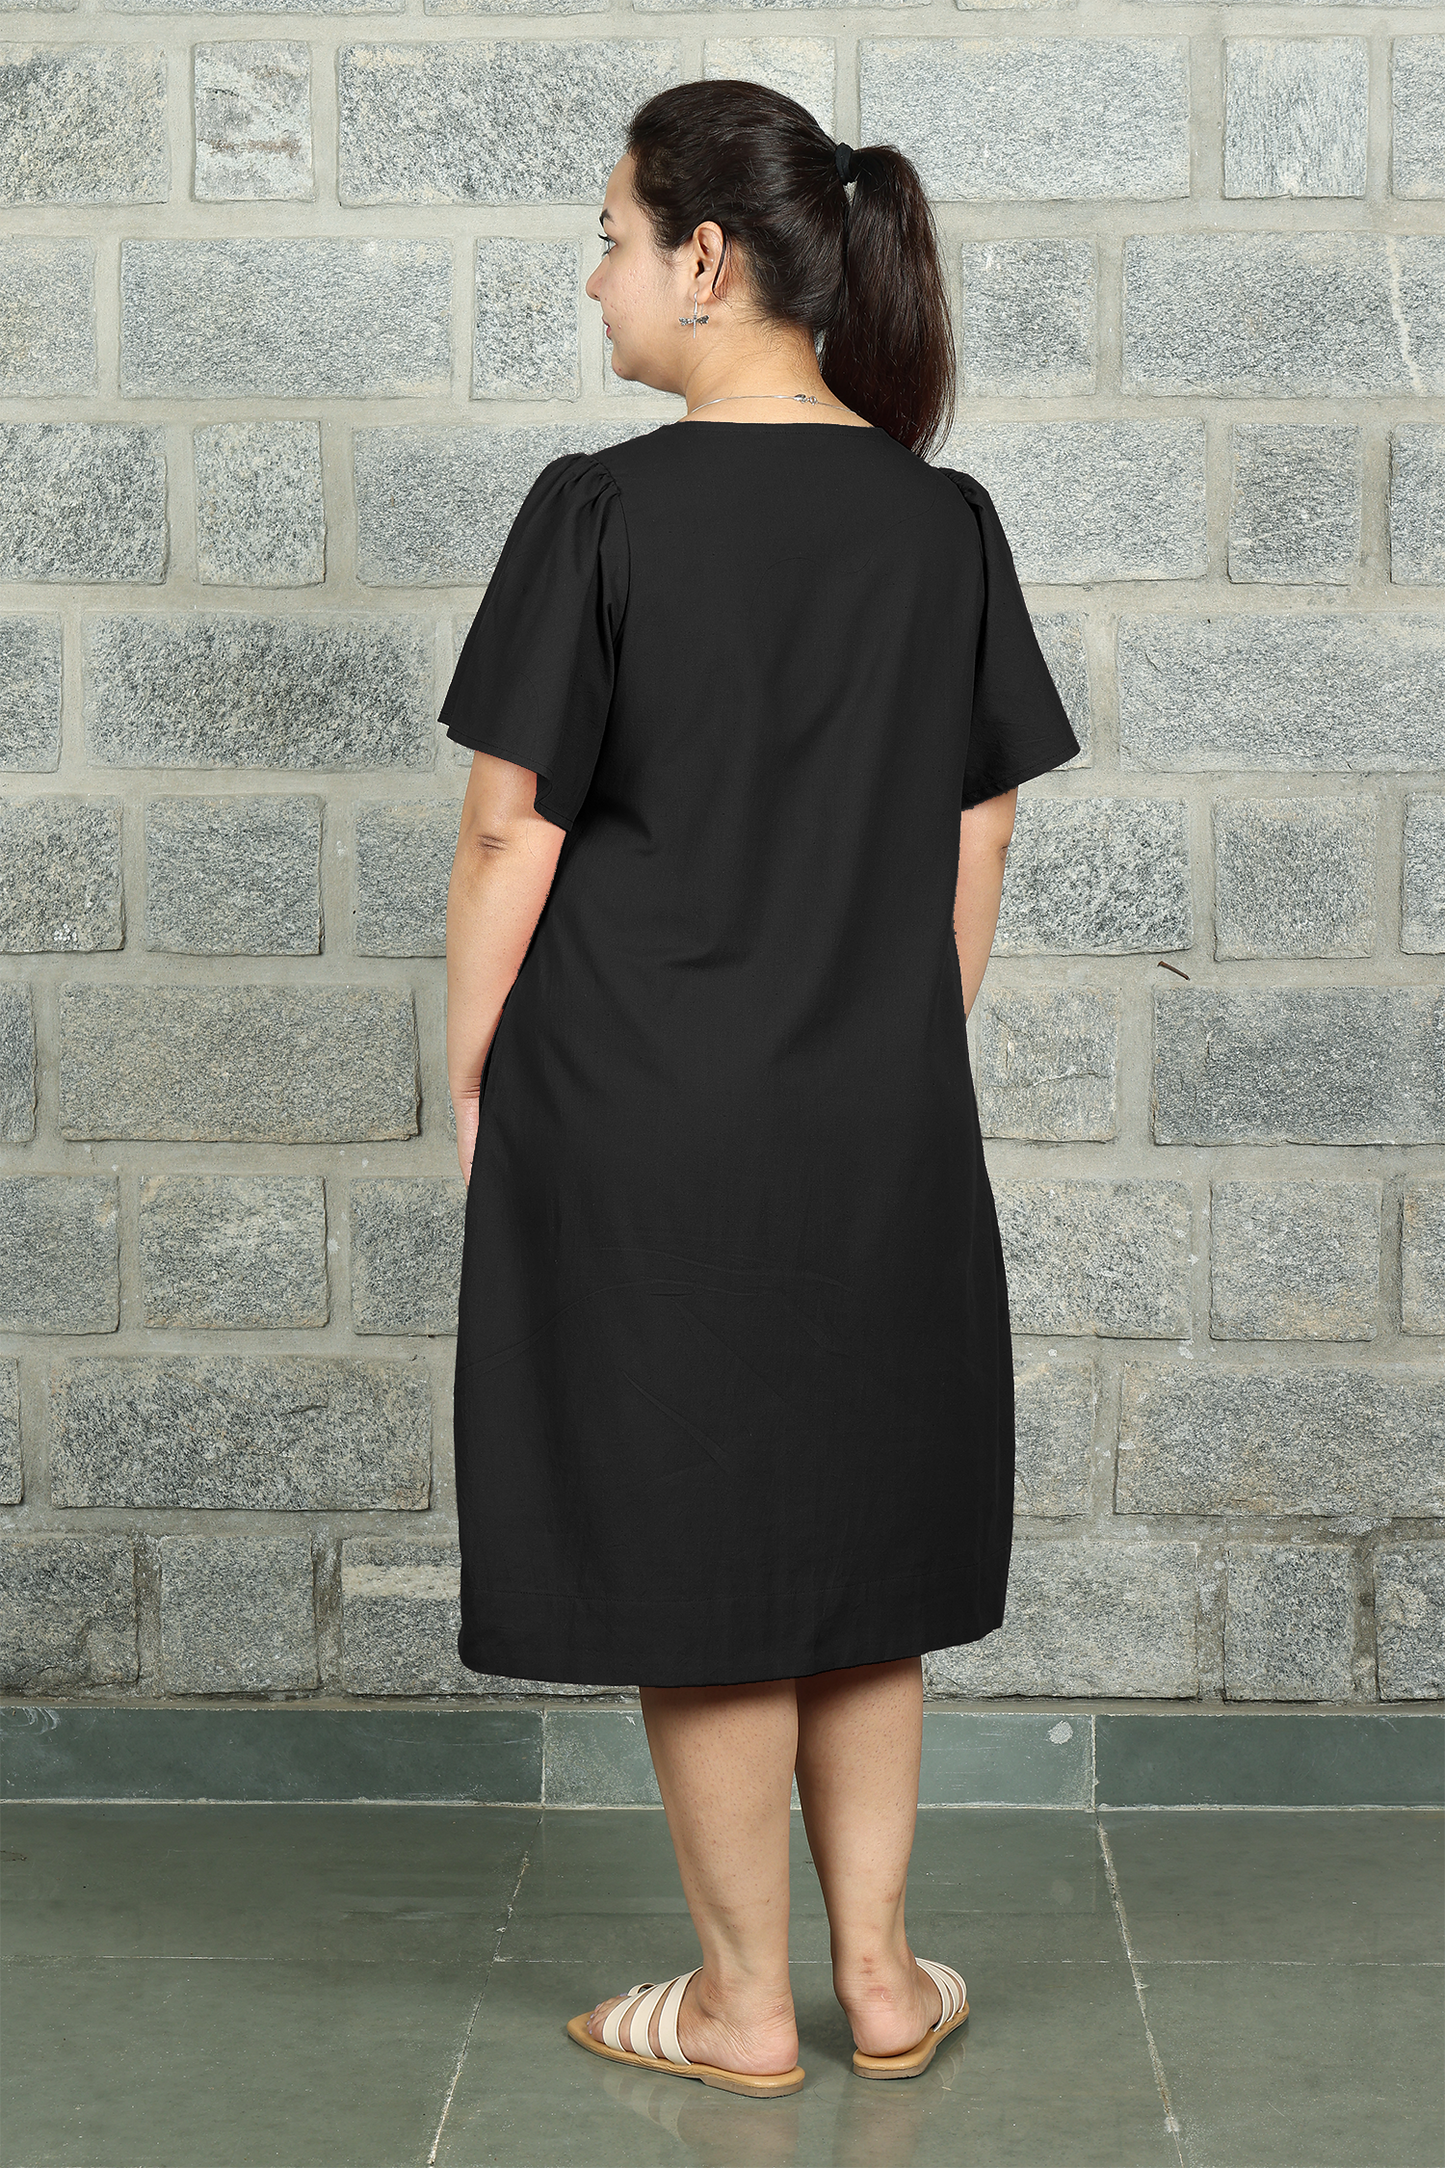 Square Neck A Line Dress in Monotone Solid Black